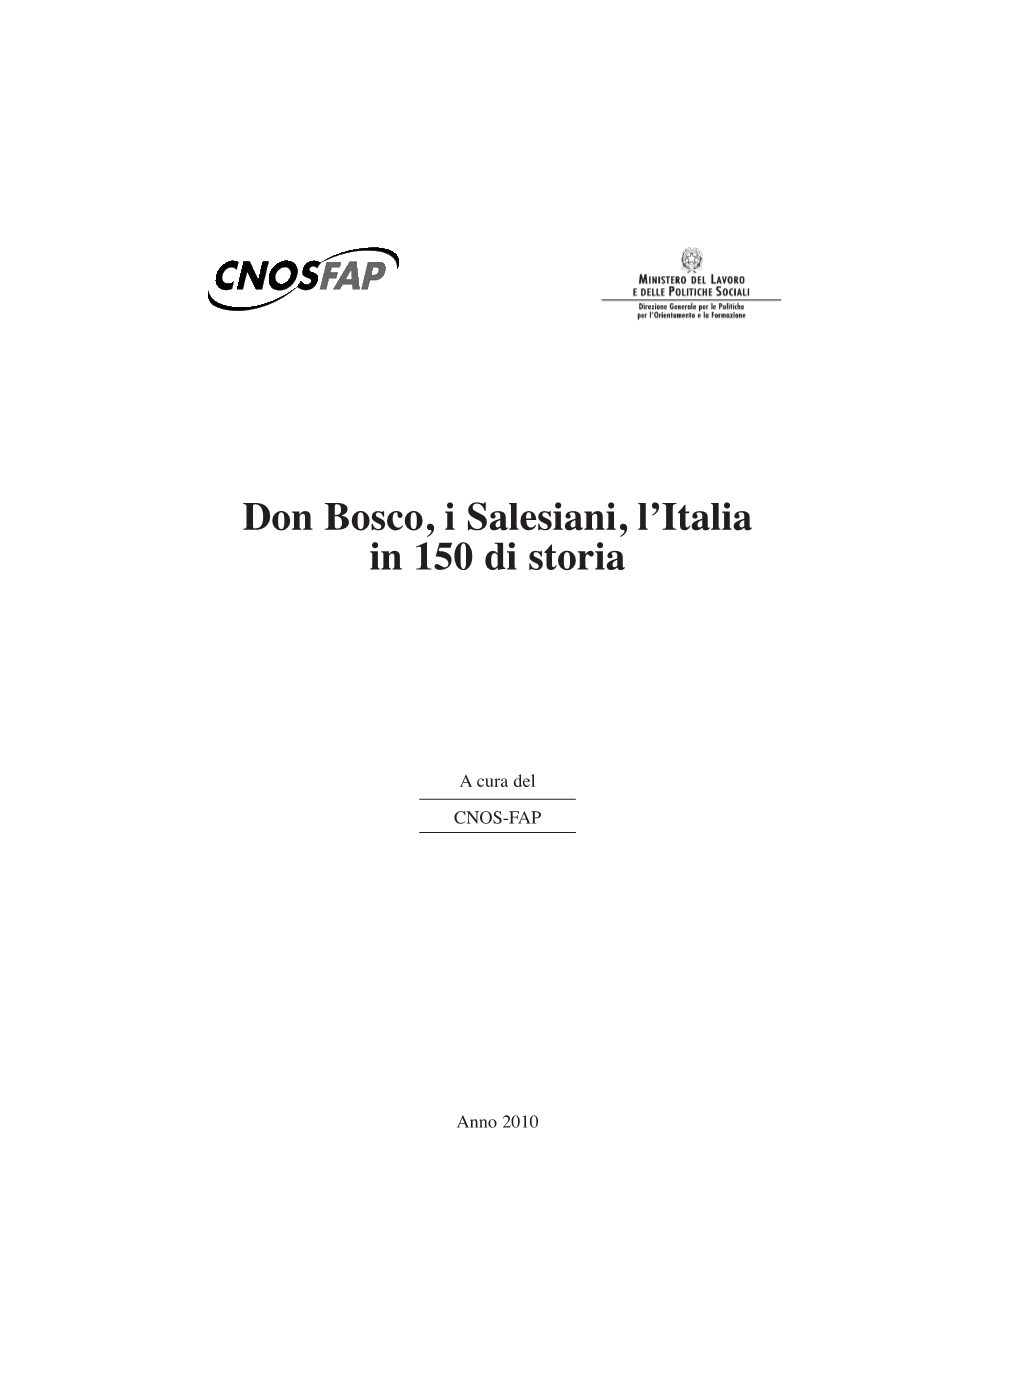 Don Bosco, I Salesiani, L'italia in 150 Anni Di Storia